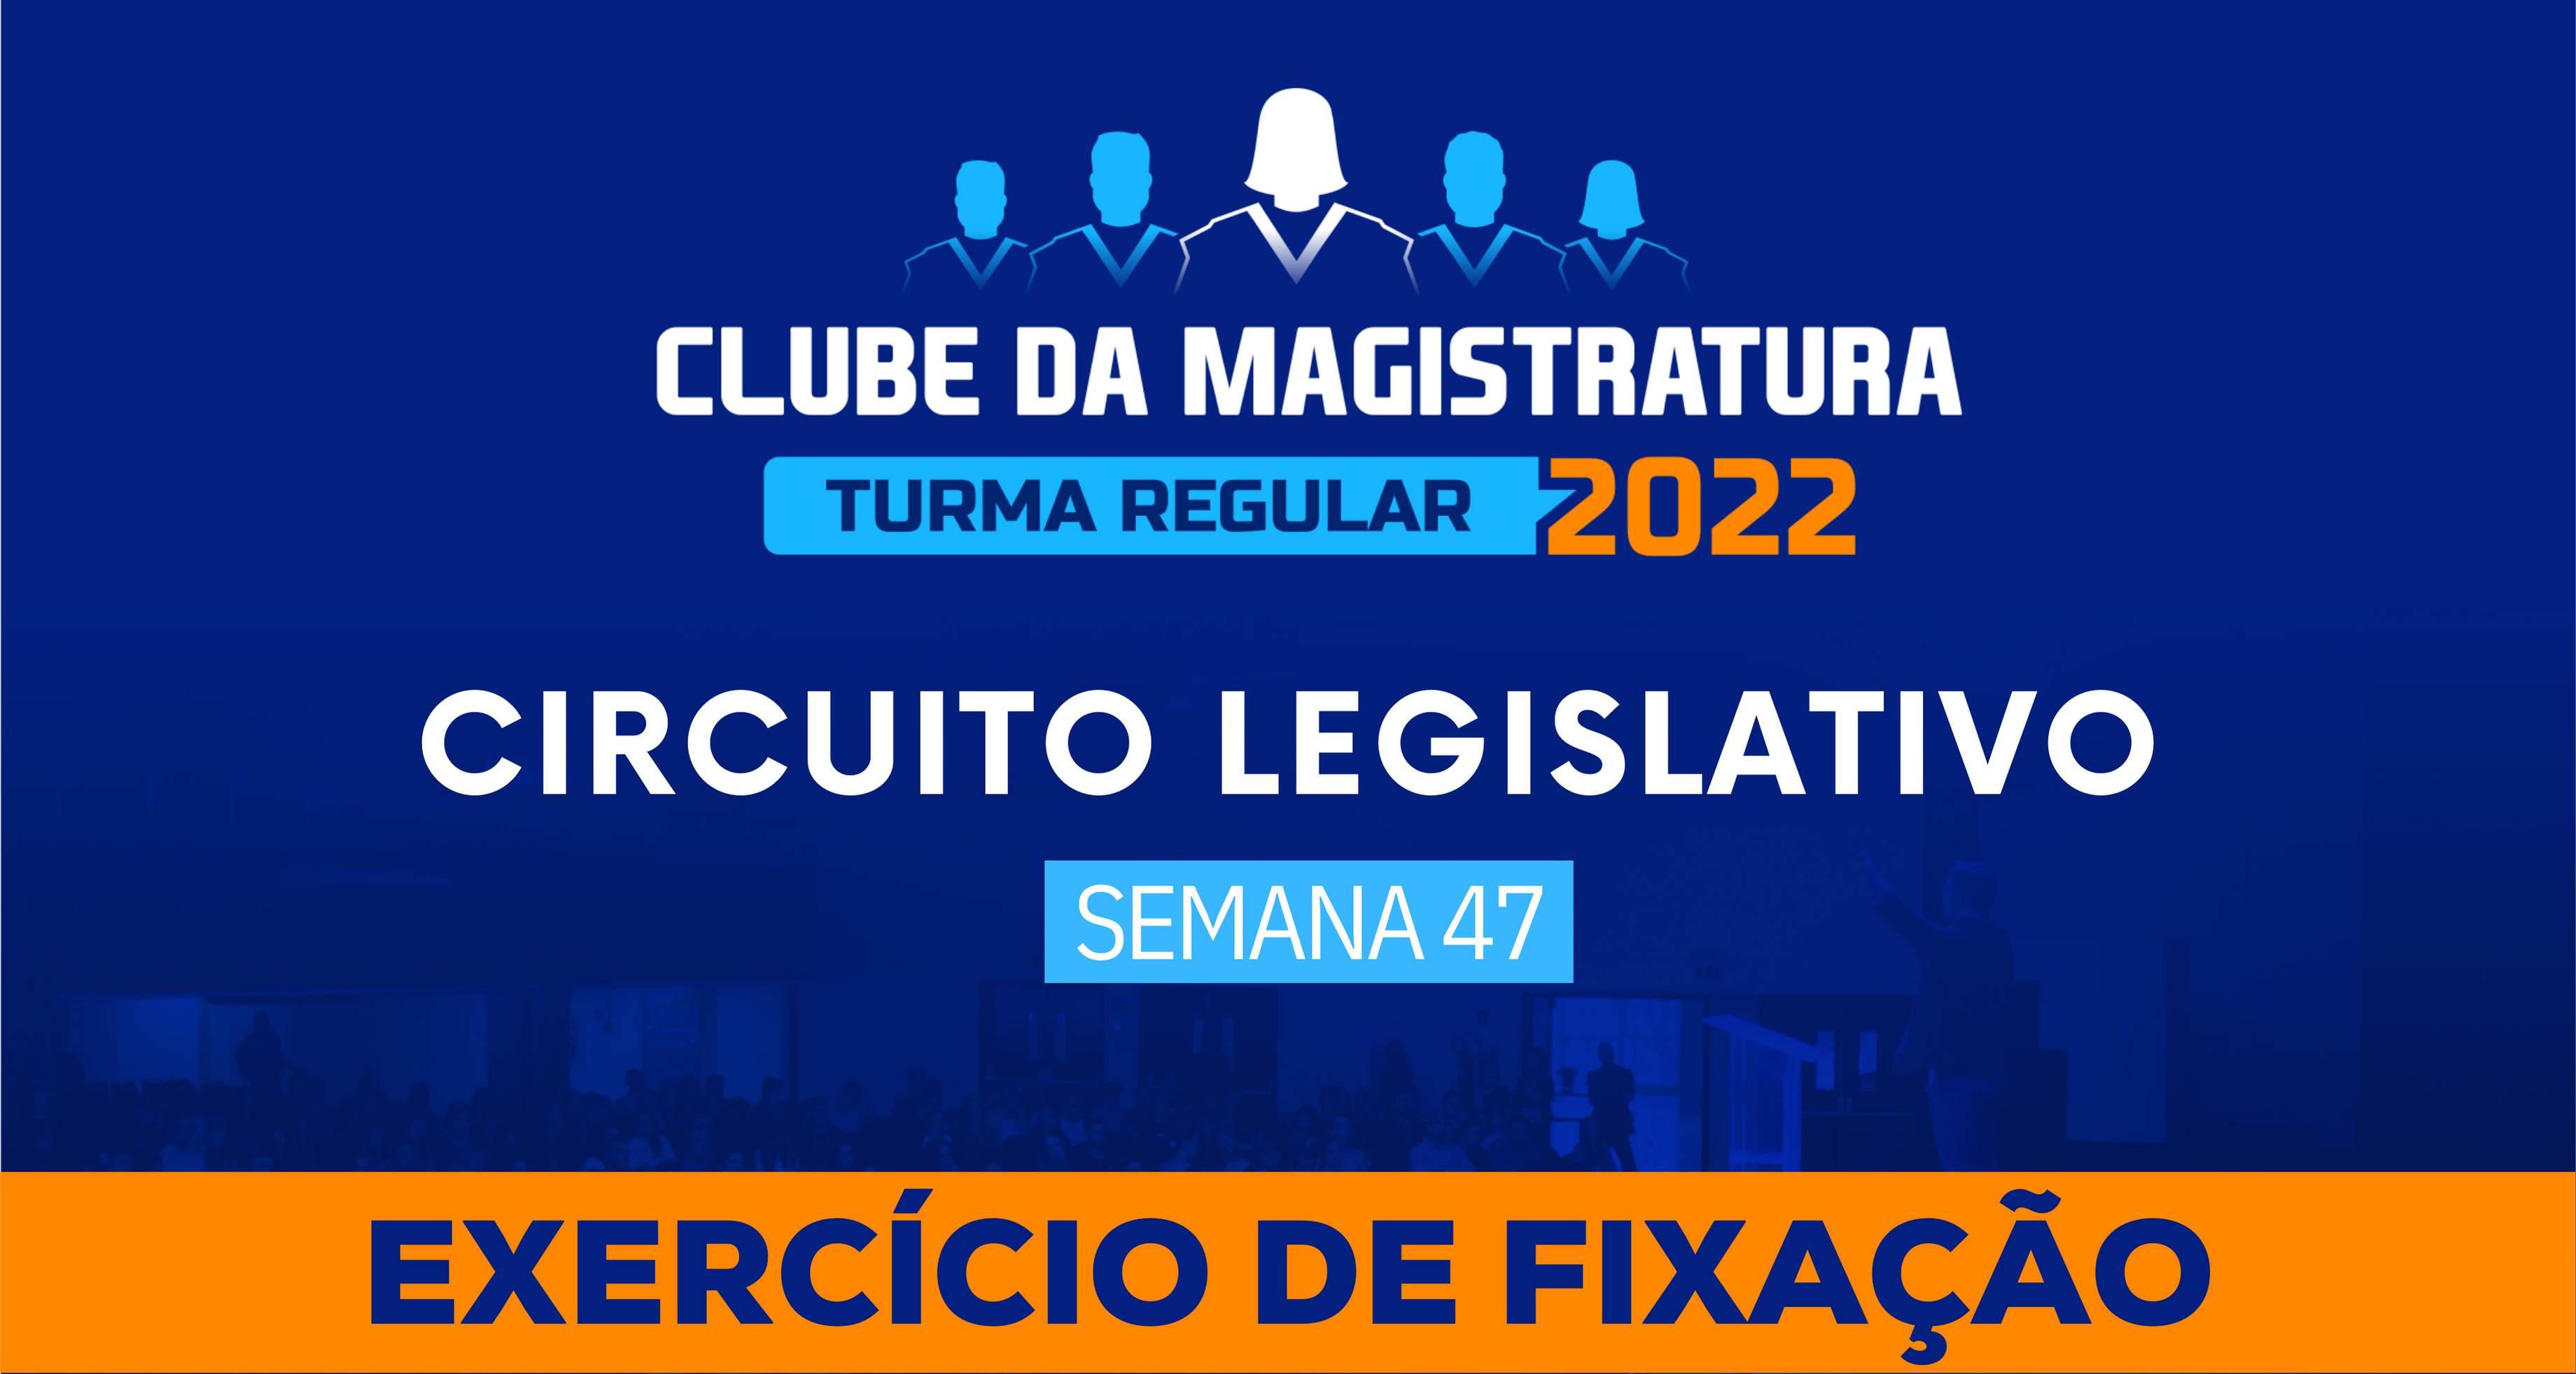 Circuito Legislativo 2022.1 (Clube da Magistratura - Semana 47)